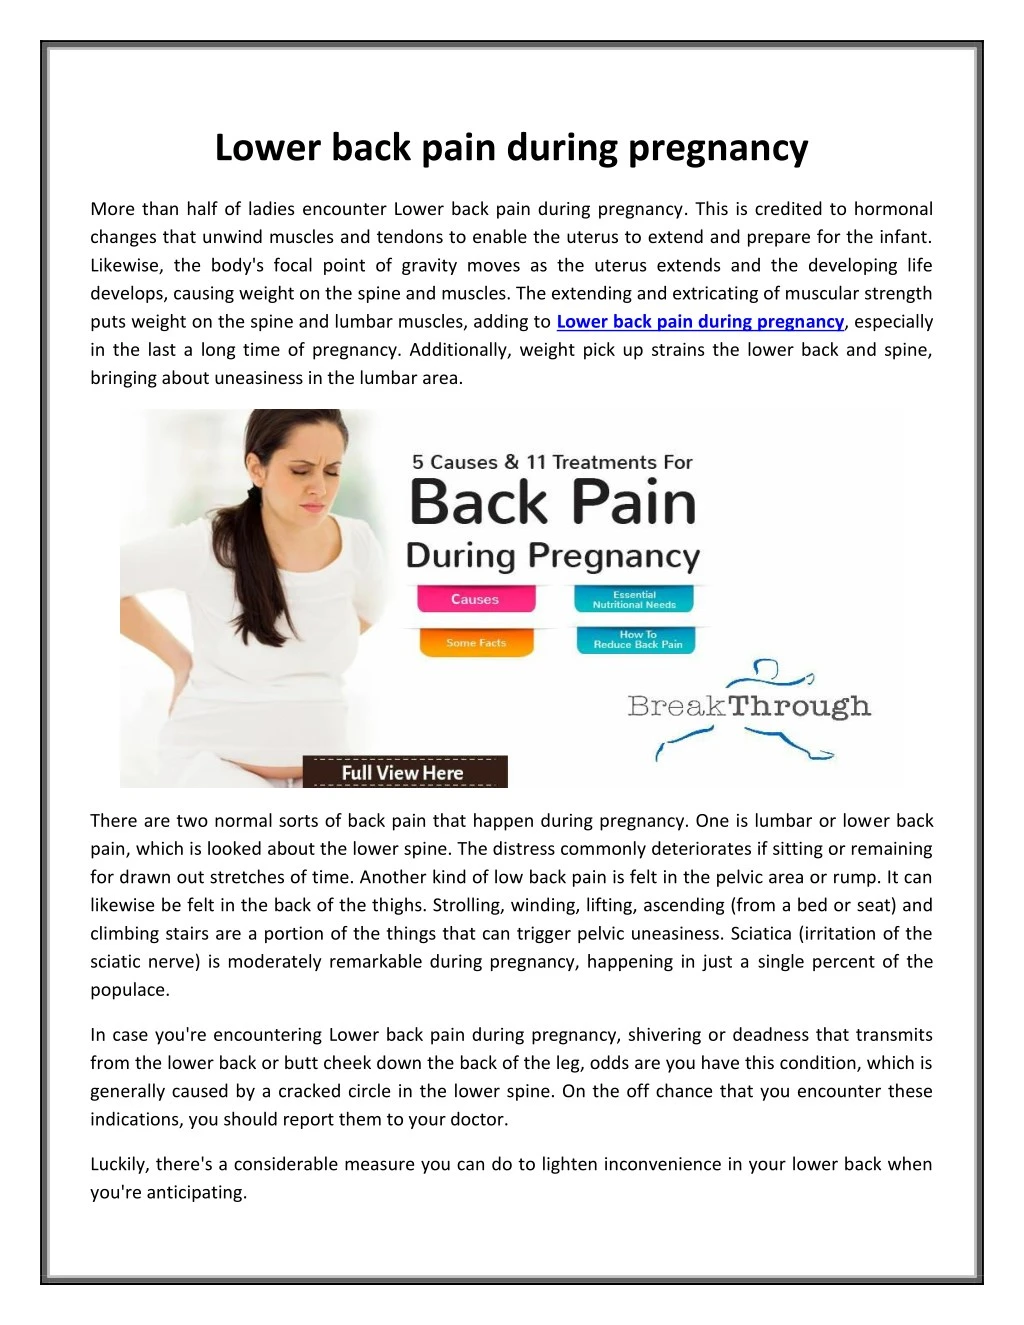 https://cdn4.slideserve.com/7752103/lower-back-pain-during-pregnancy-n.jpg